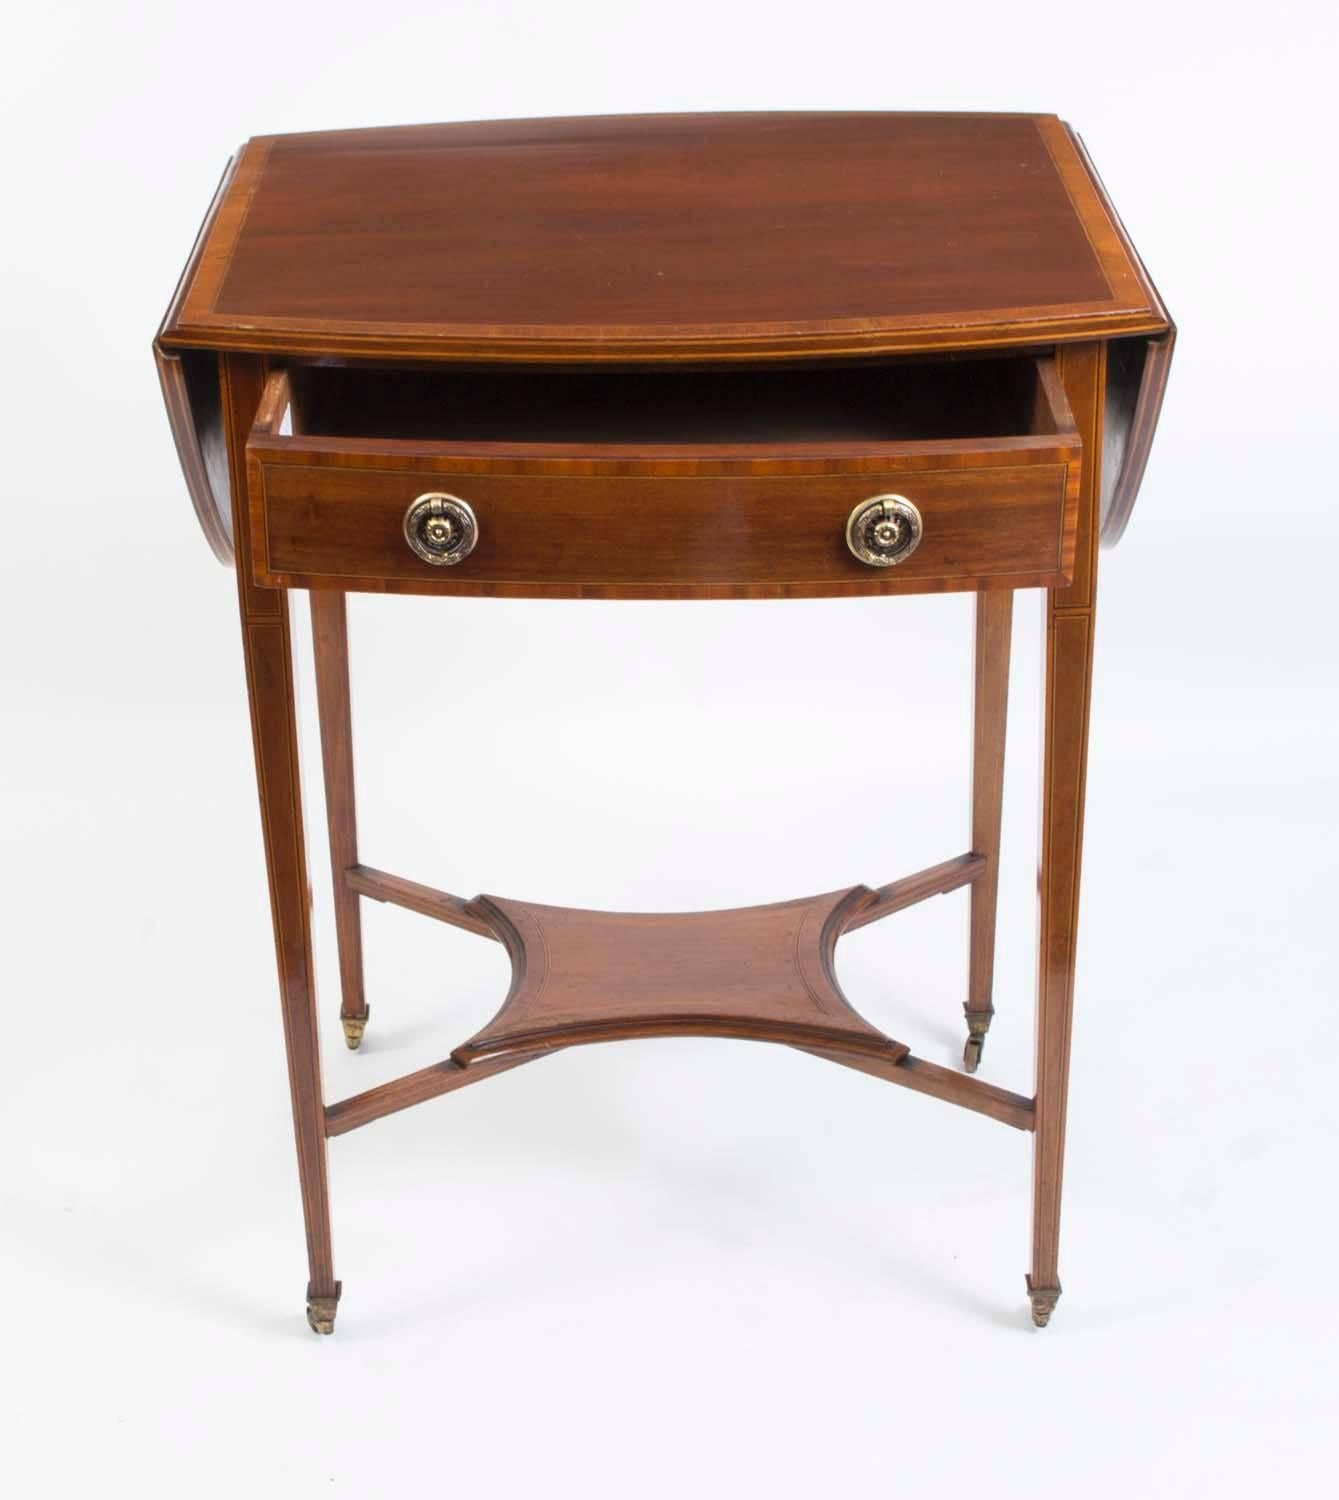 Il s'agit d'une charmante table d'appoint édouardienne en acajou, incrustée et à bandes croisées, vers 1900.

Il s'agit d'une table à abattant qui possède un tiroir utile avec deux poignées en laiton. 
 
La belle marqueterie fine complète l'acajou